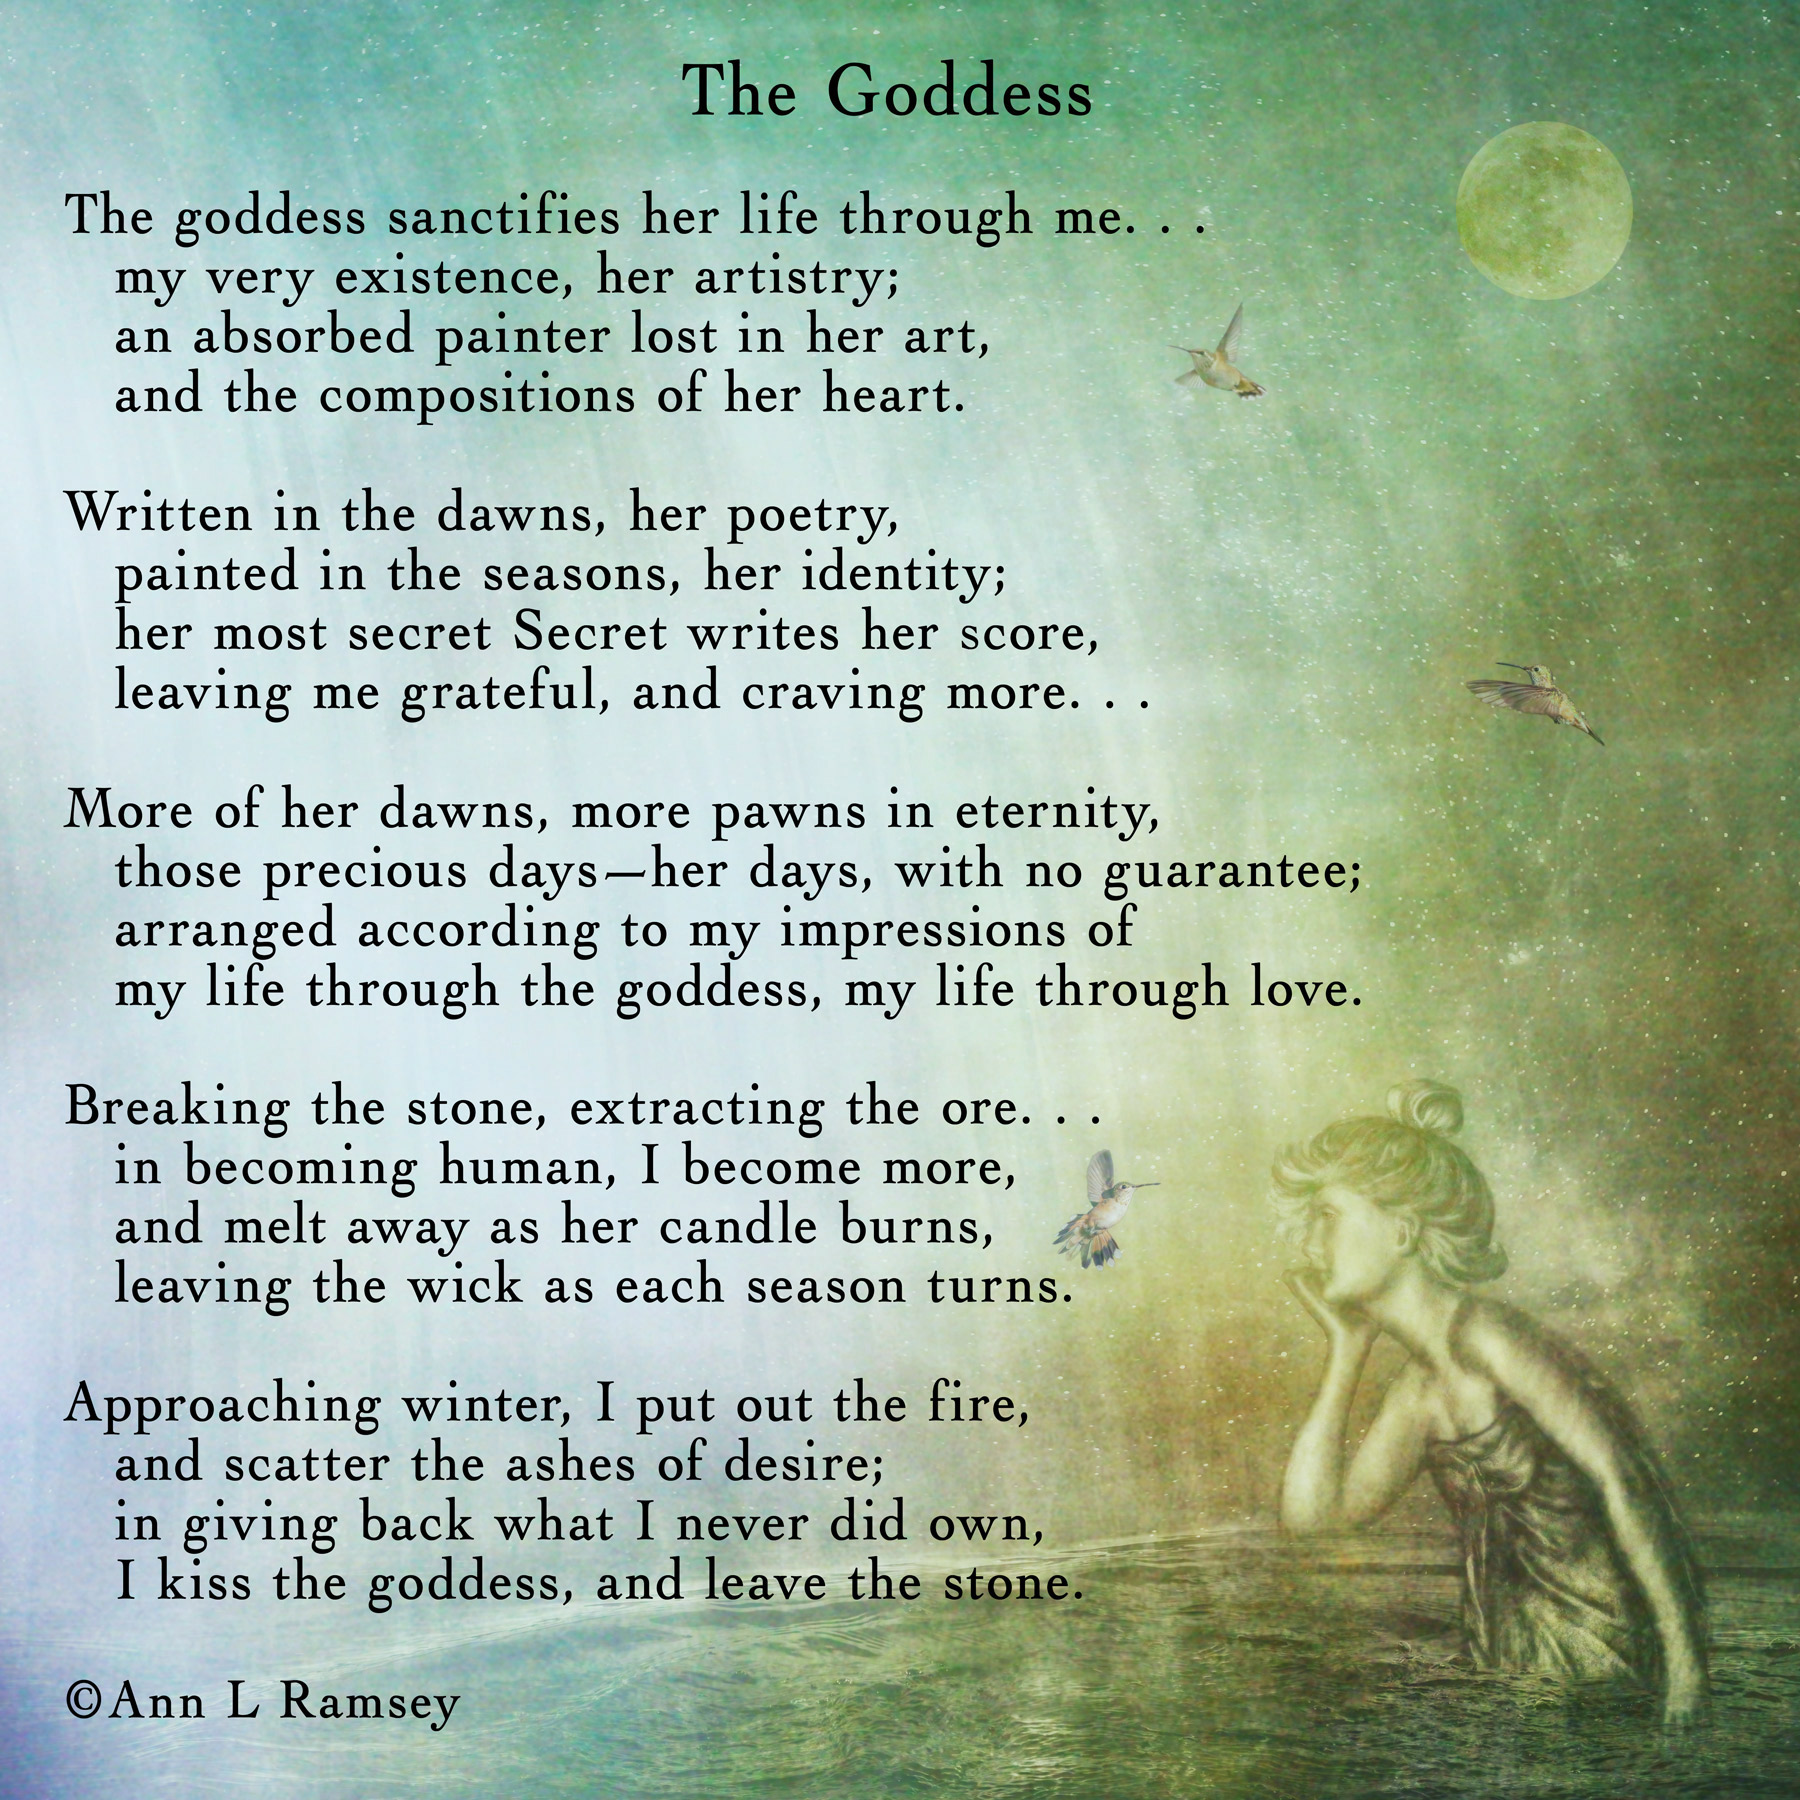 The Goddess